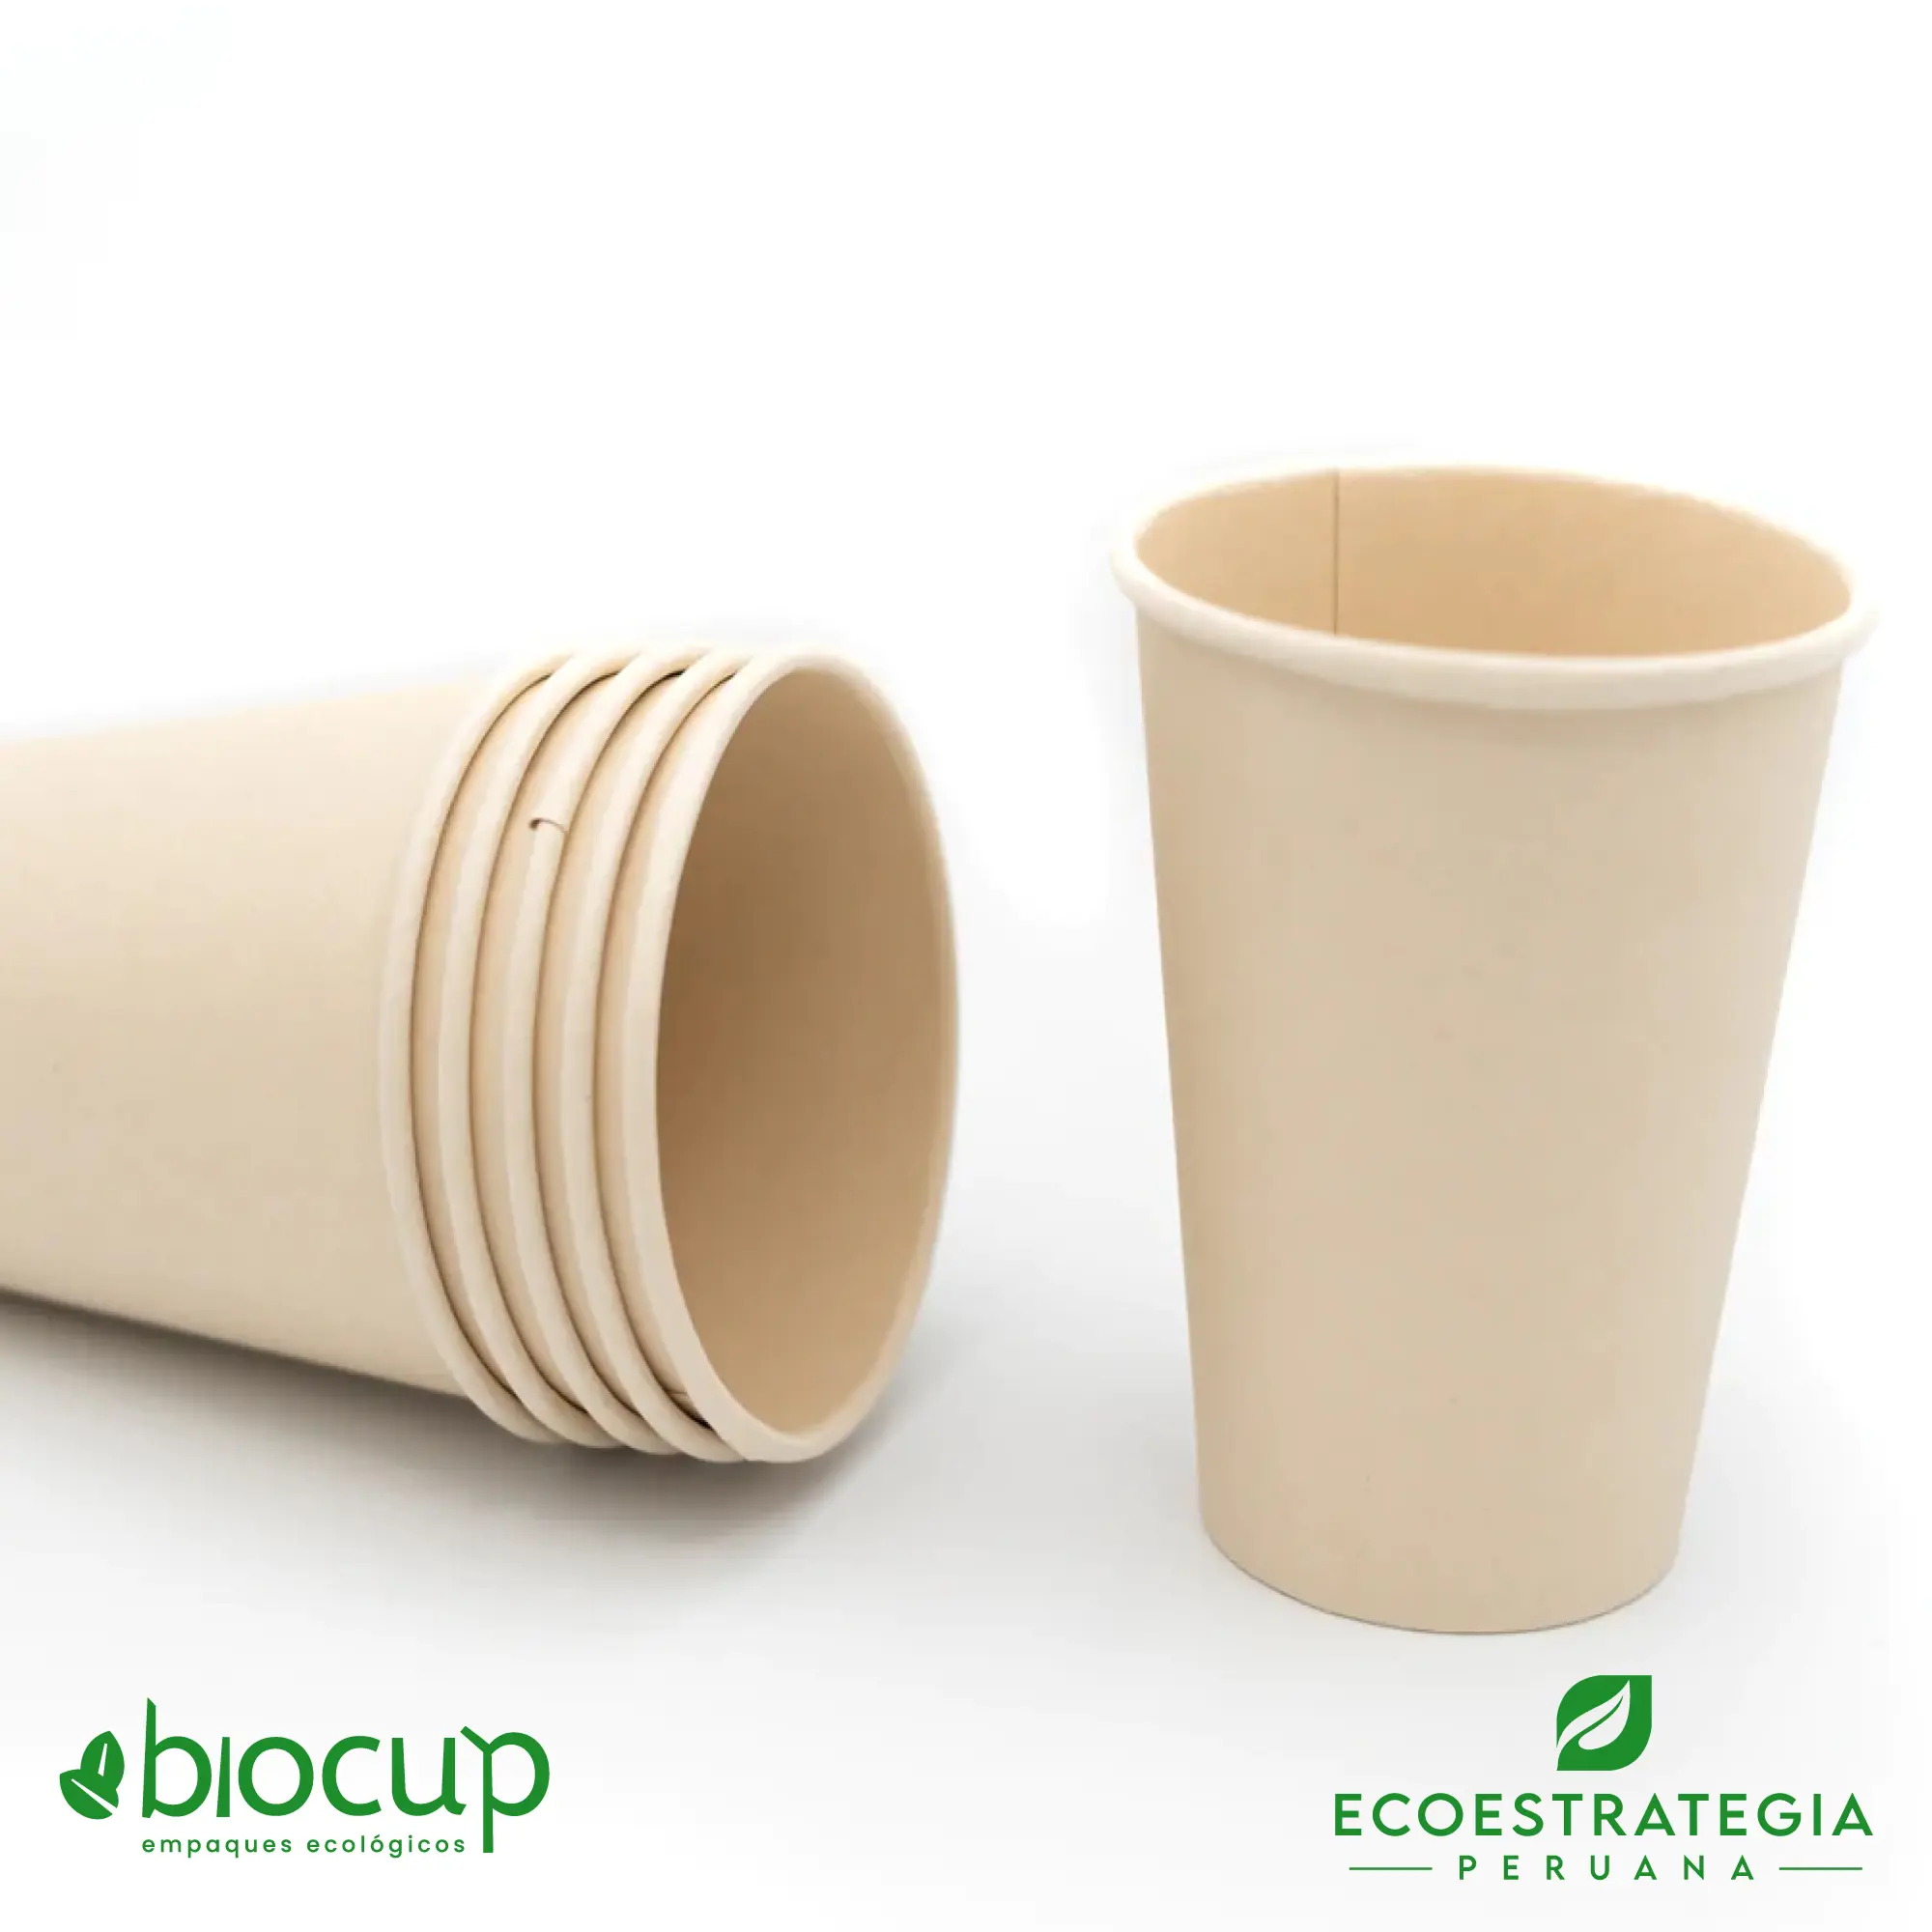 Este vaso de 16 oz es un producto de materiales biodegradables y compostables, hecho a base de fibra de bambú. Cotiza tus vasos para bebidas frías o calientes